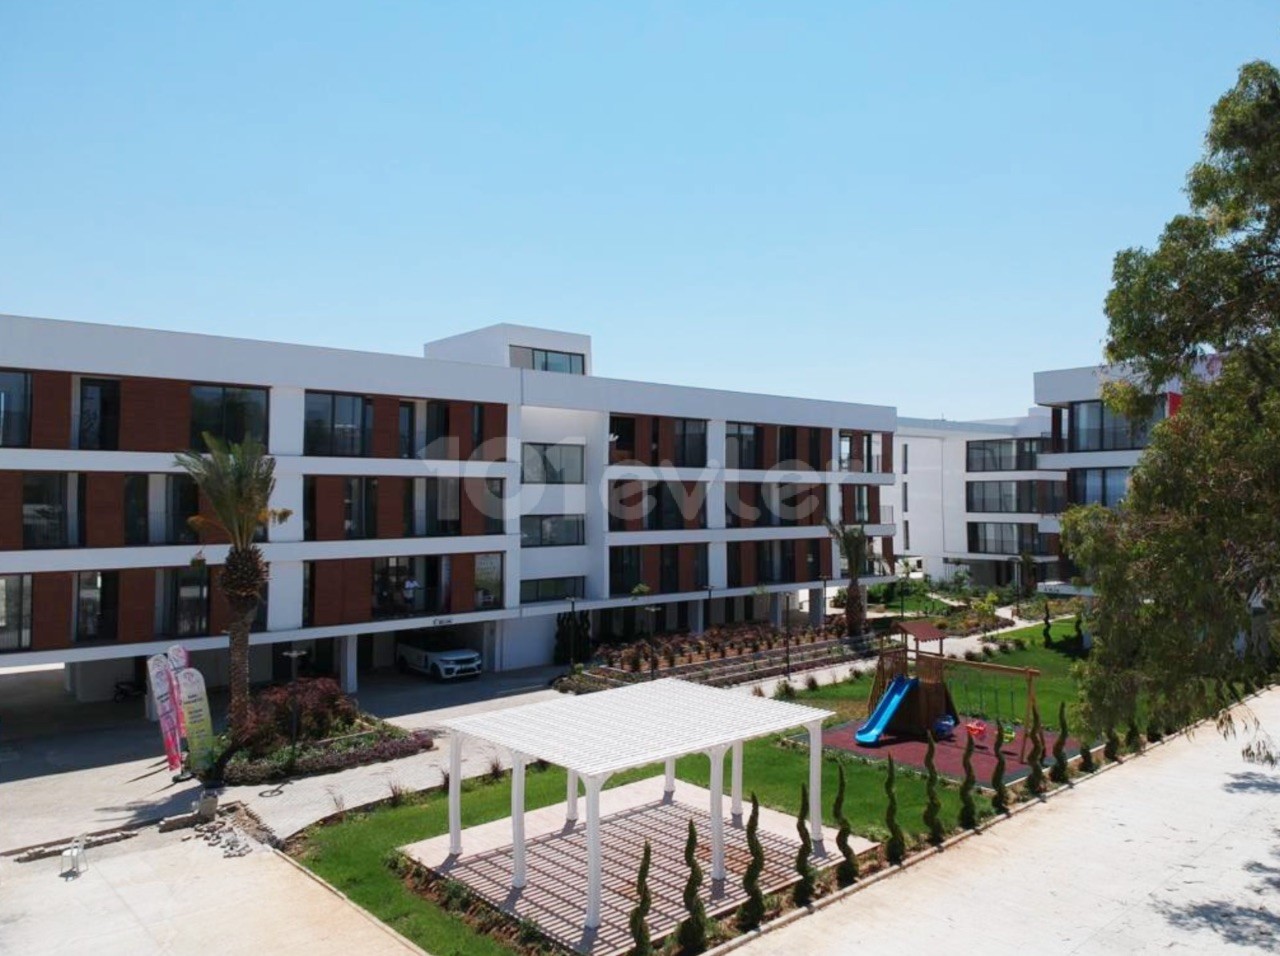 2+1 Null Wohnung Zu vermieten in Zypern Nikosia HAMITKÖY, Möbliert, bewachte Website, 1000m2 Garten, in der Nähe der Universität Haltestellen ** 